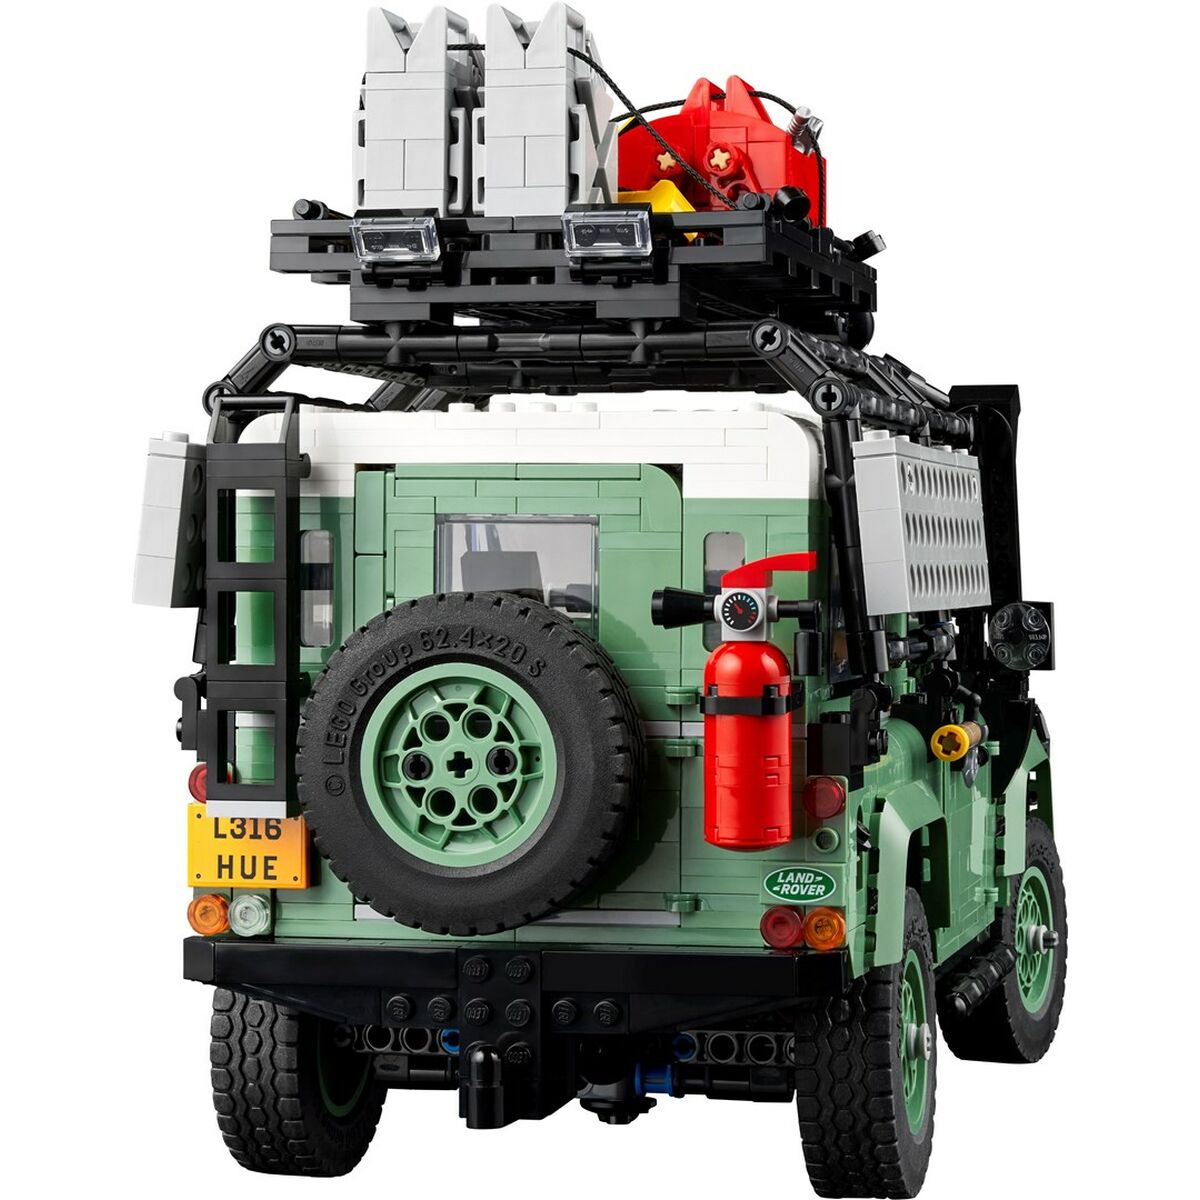 Bouwspel Lego Classic Defender 90 Land Rover 10317 2336 Onderdelen Zwart